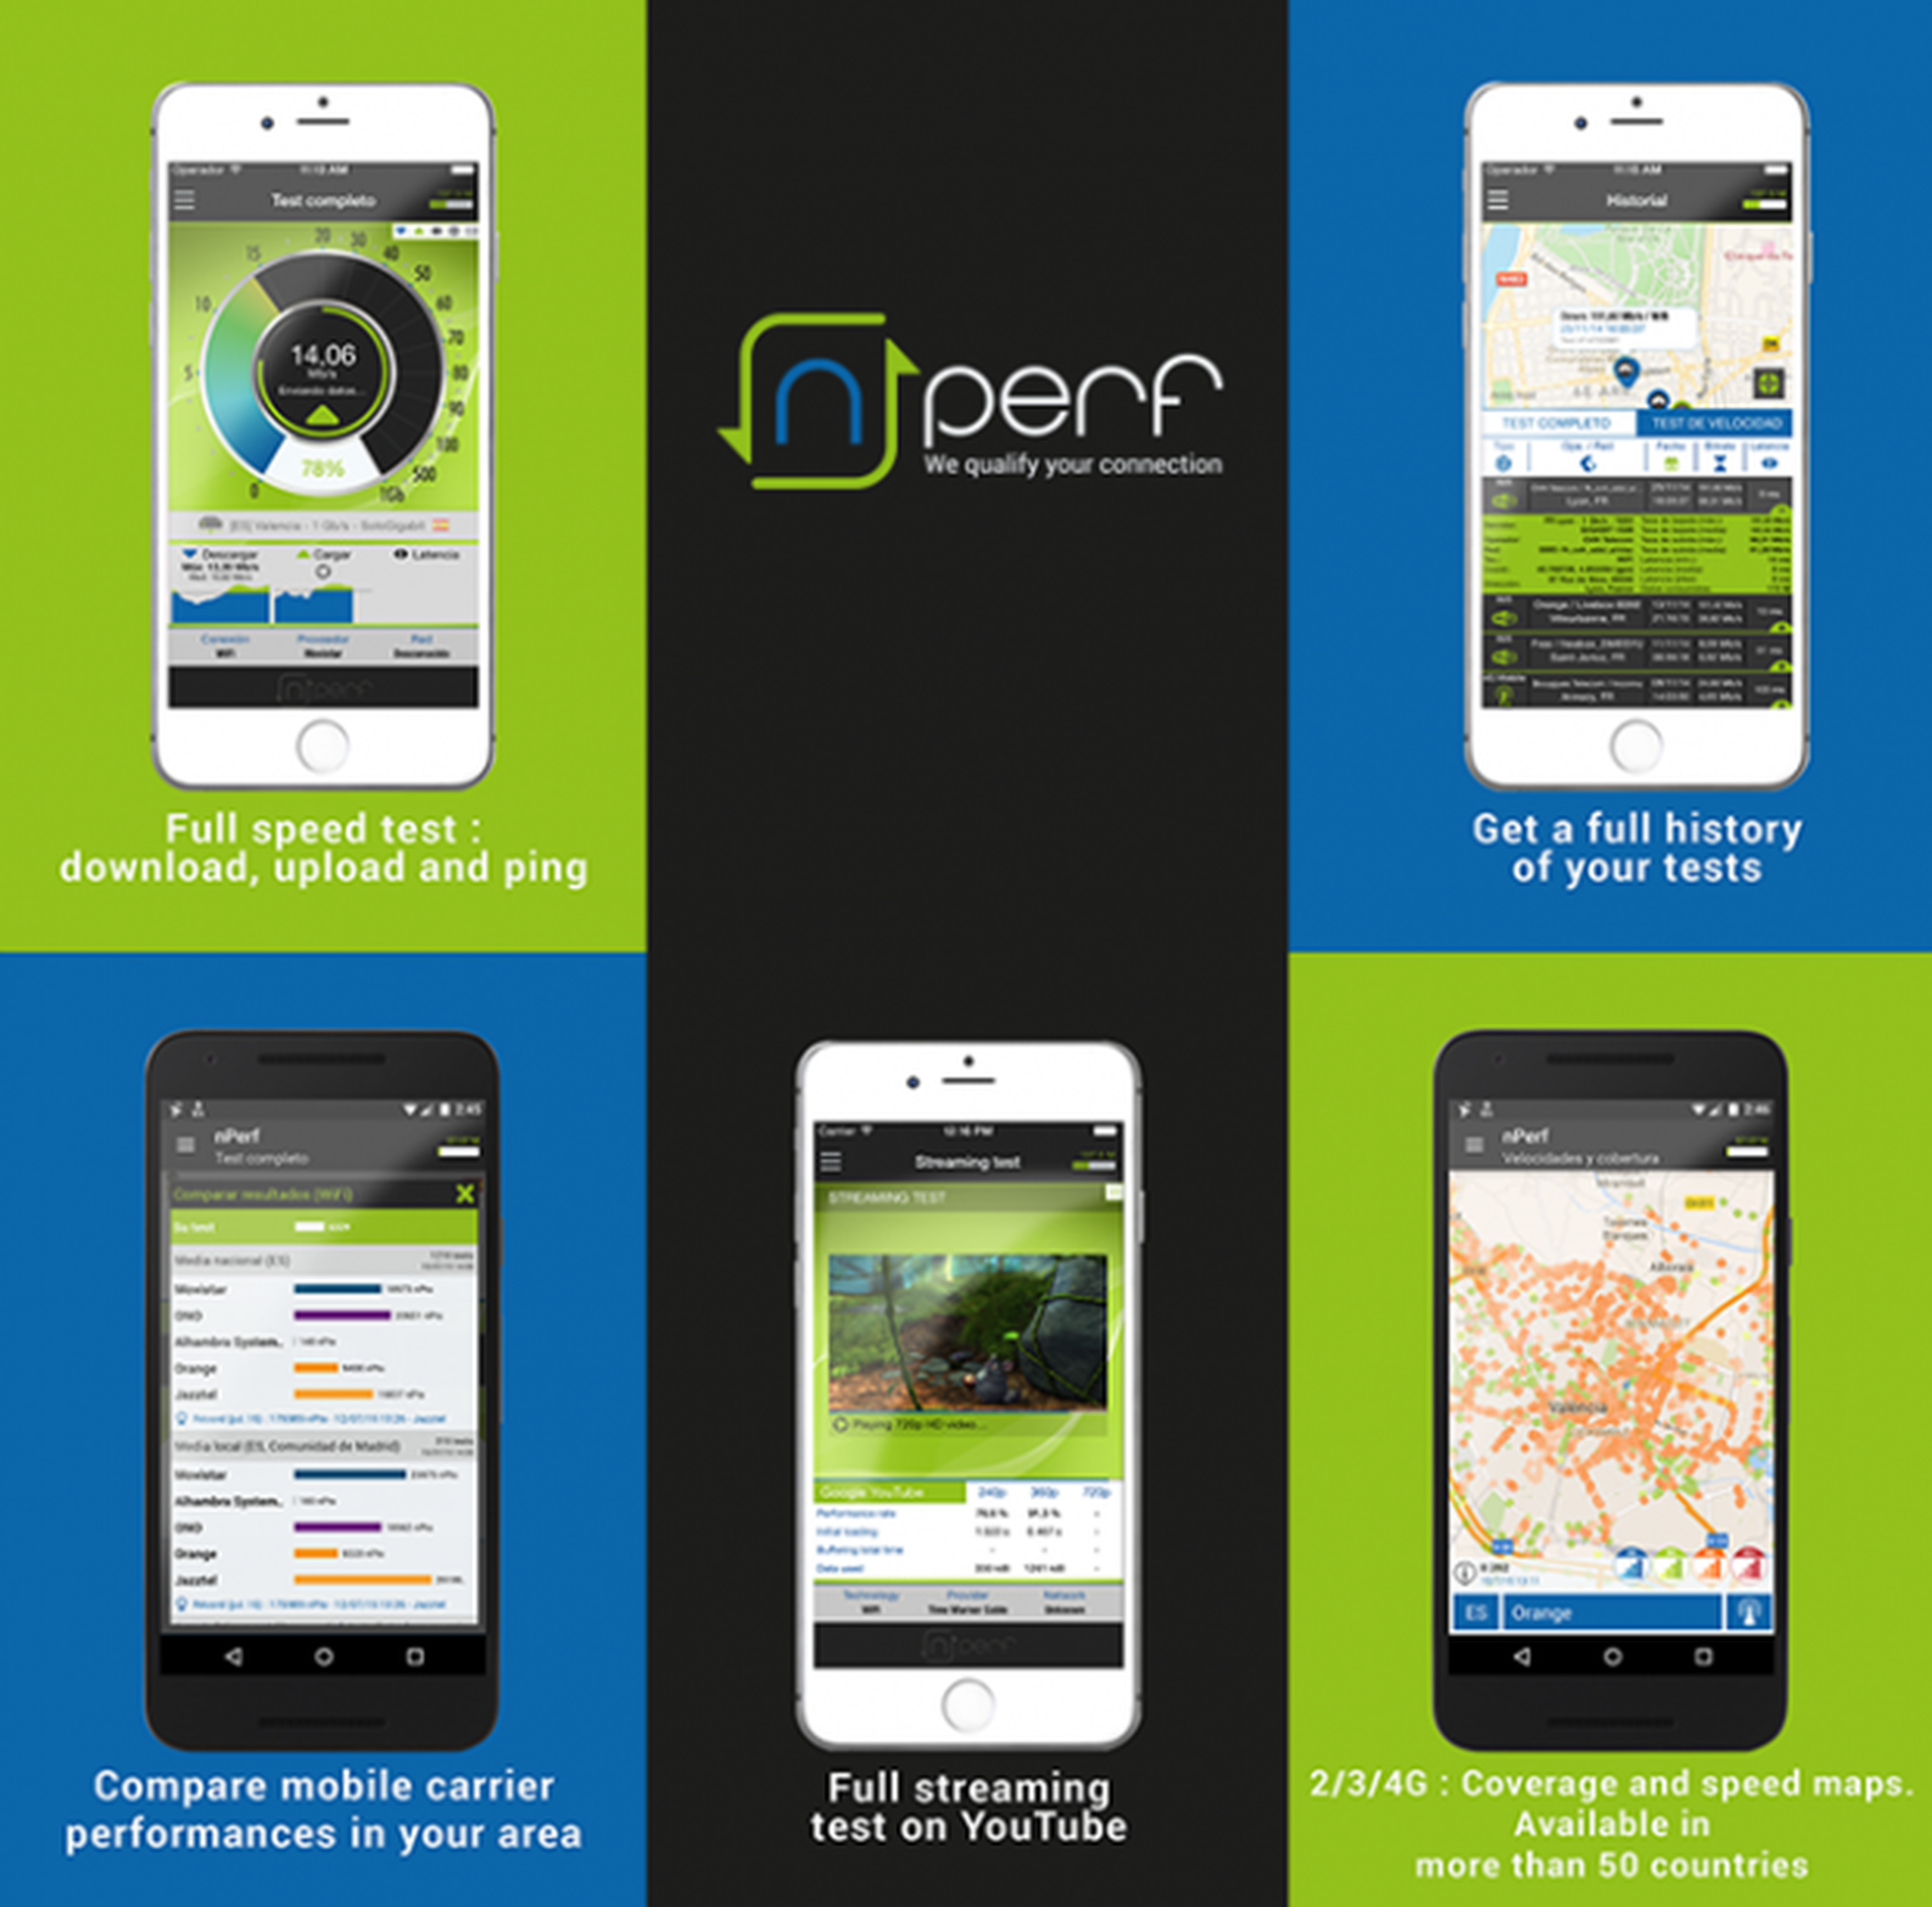 La app de nPerf está disponible desde las respectivas tiendas de aplicaciones